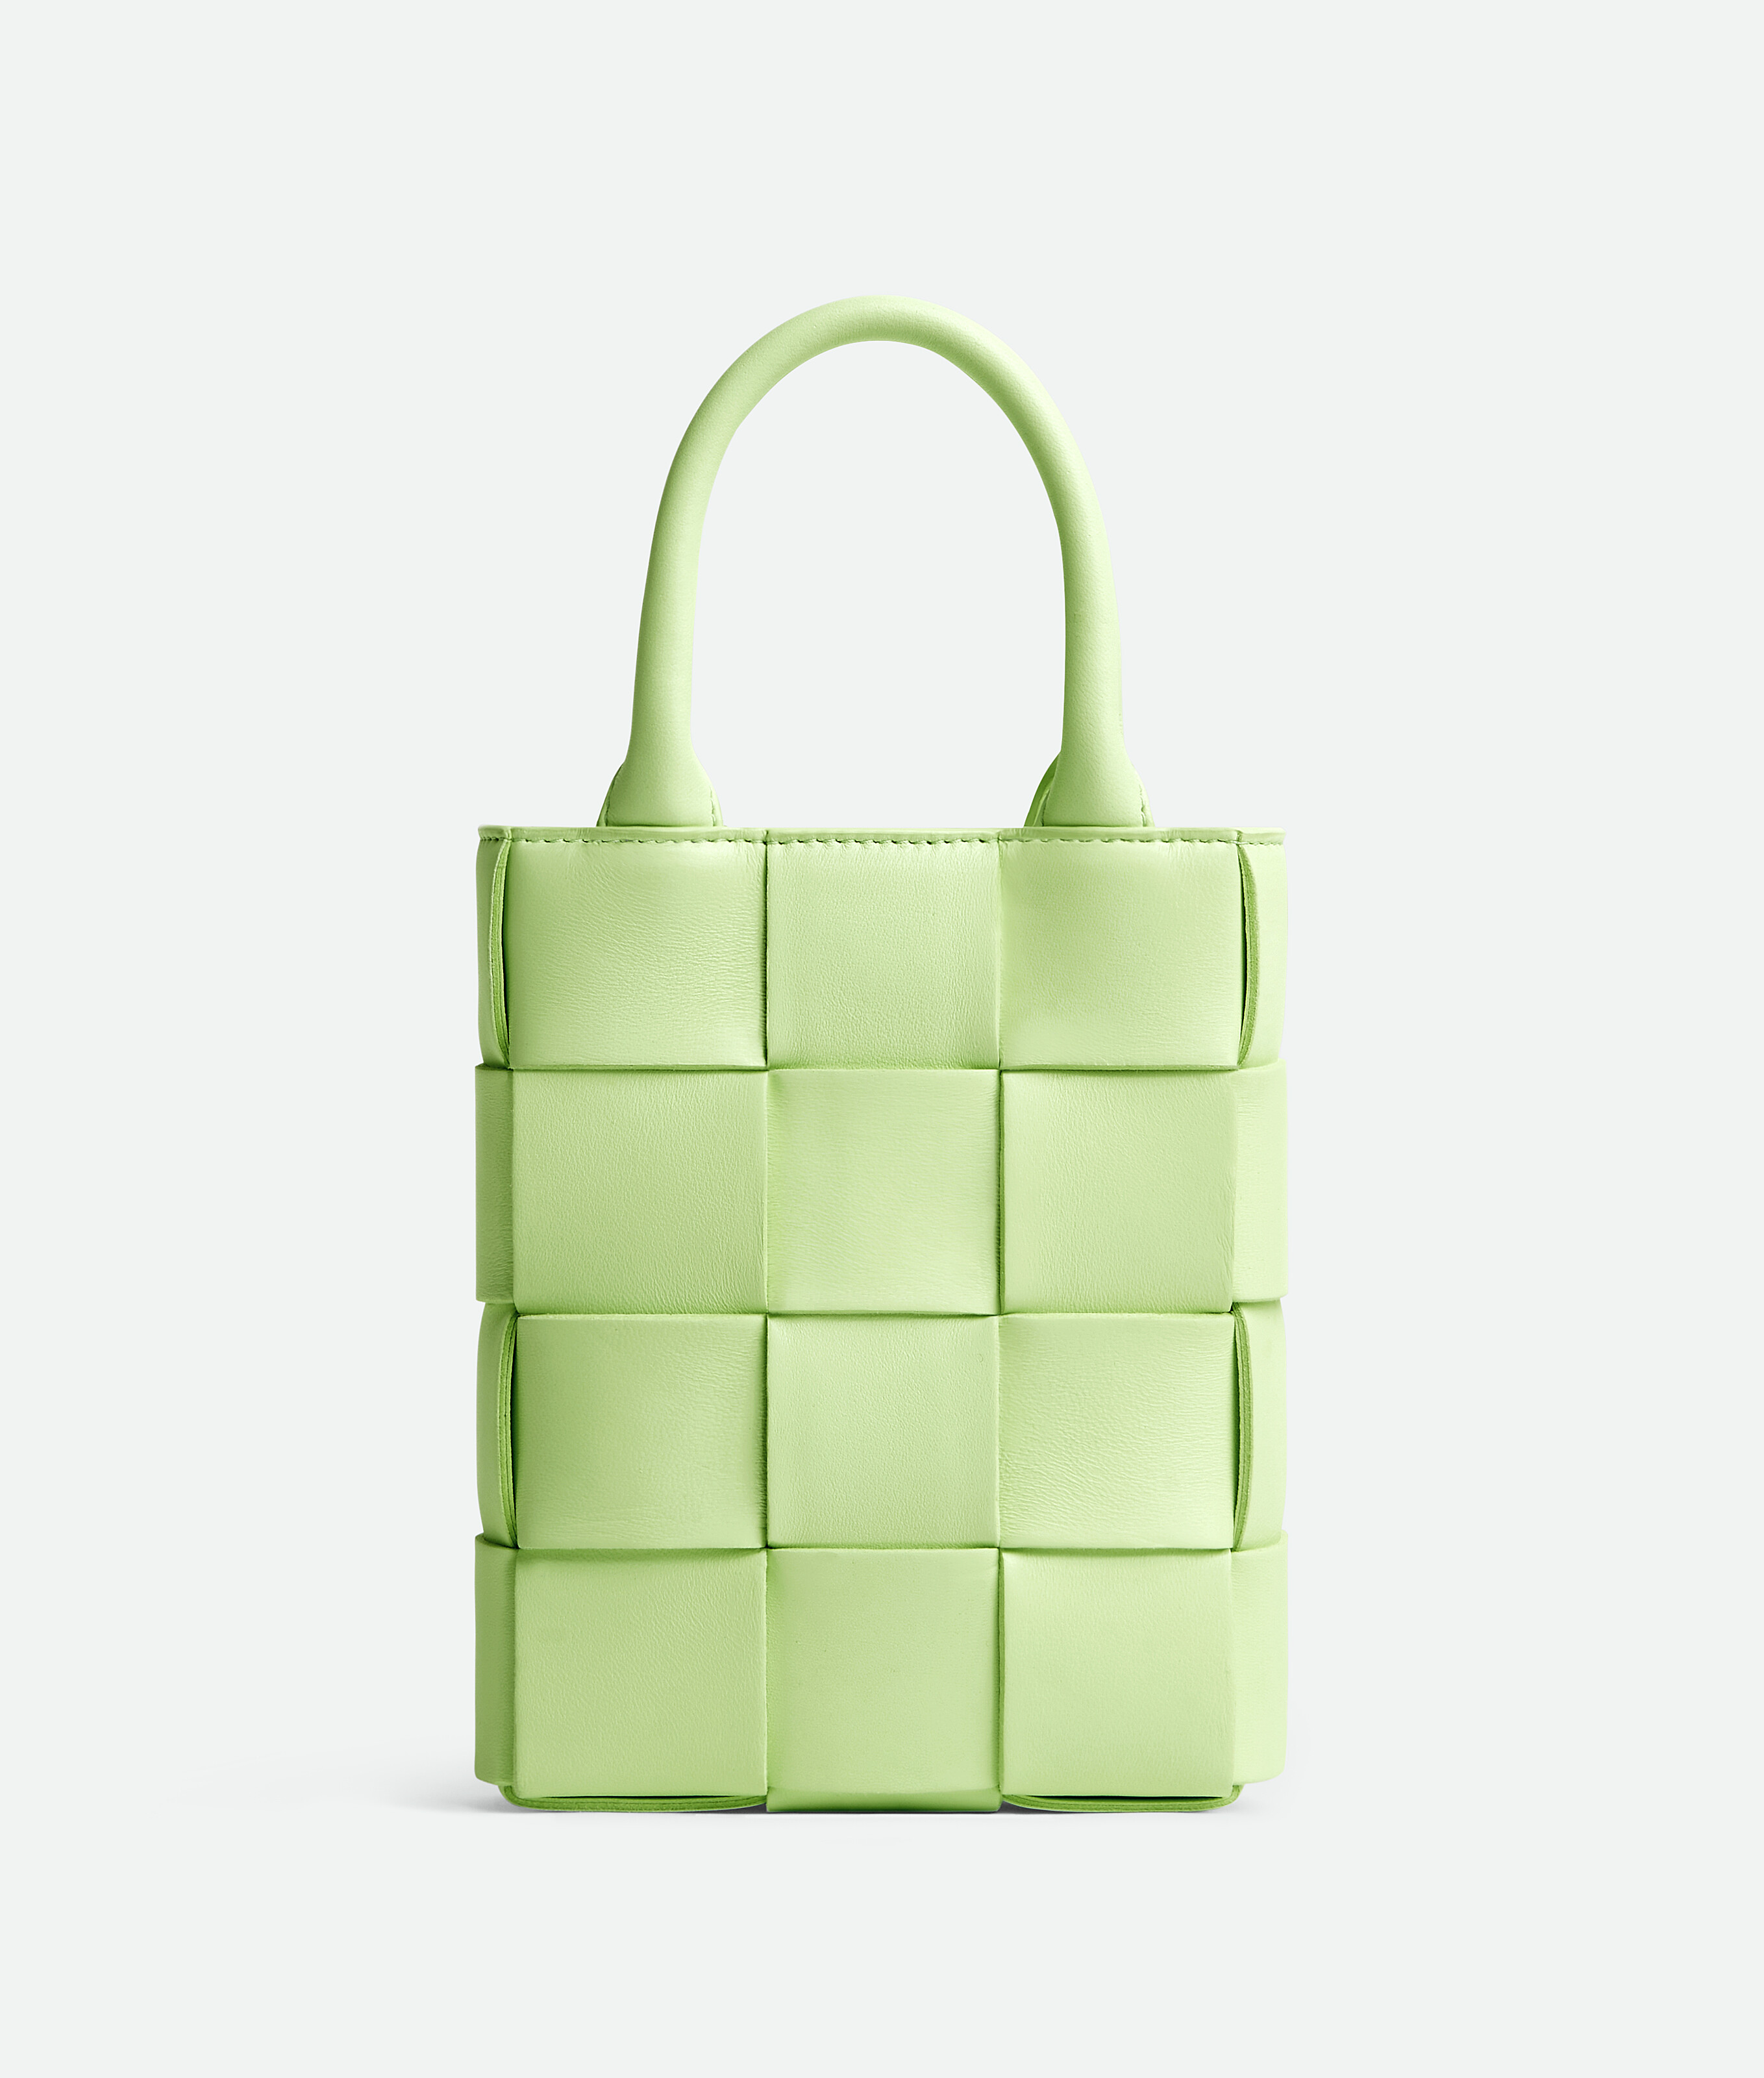 Bottega Veneta Small Arco Tote Stitch Intrecciato Handbag Lambskin Leather  Green